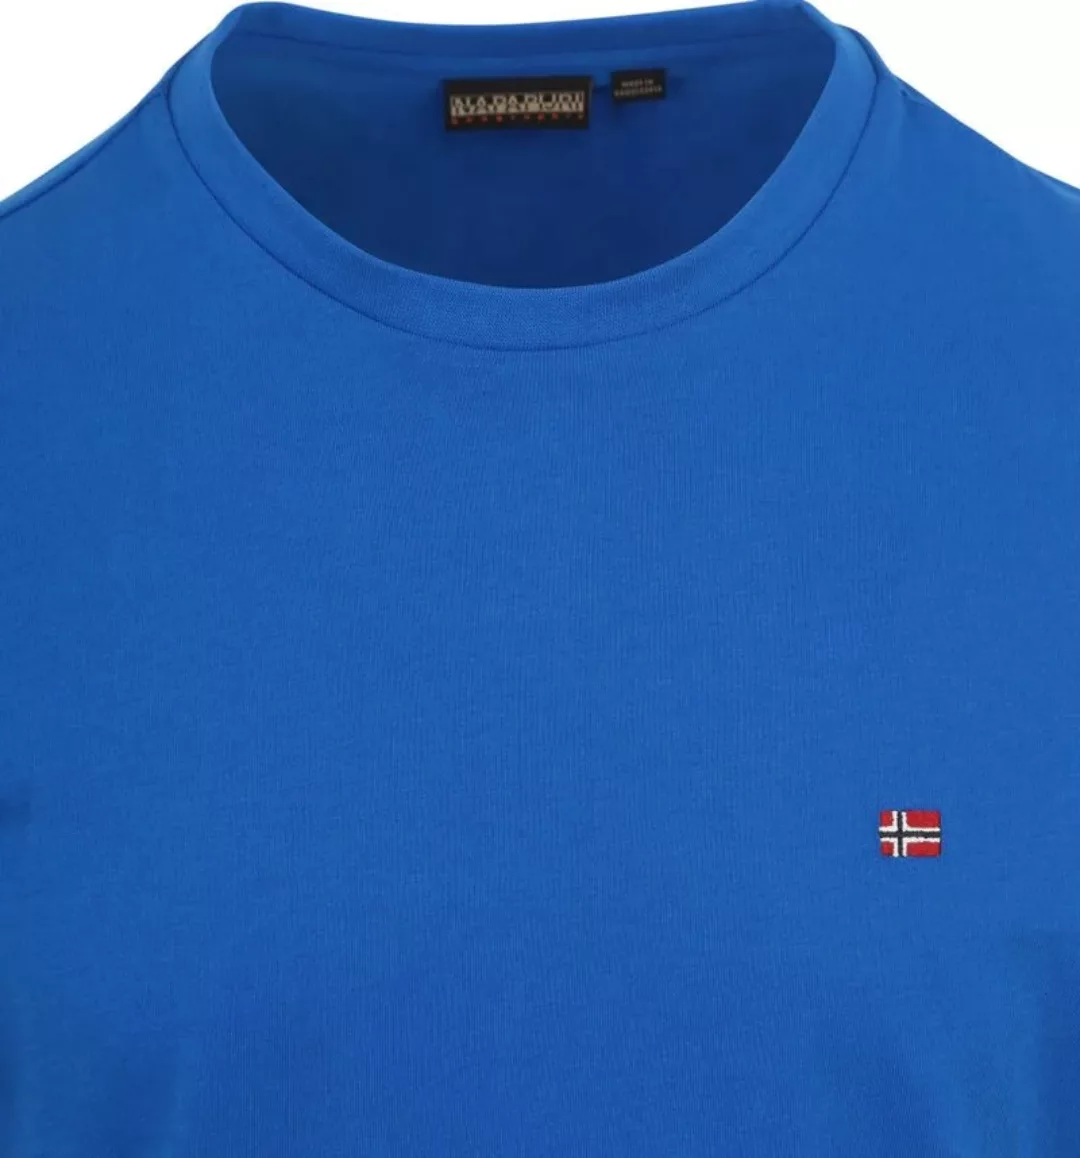 Napapijri Salis T-shirt Kobaltblau - Größe S günstig online kaufen